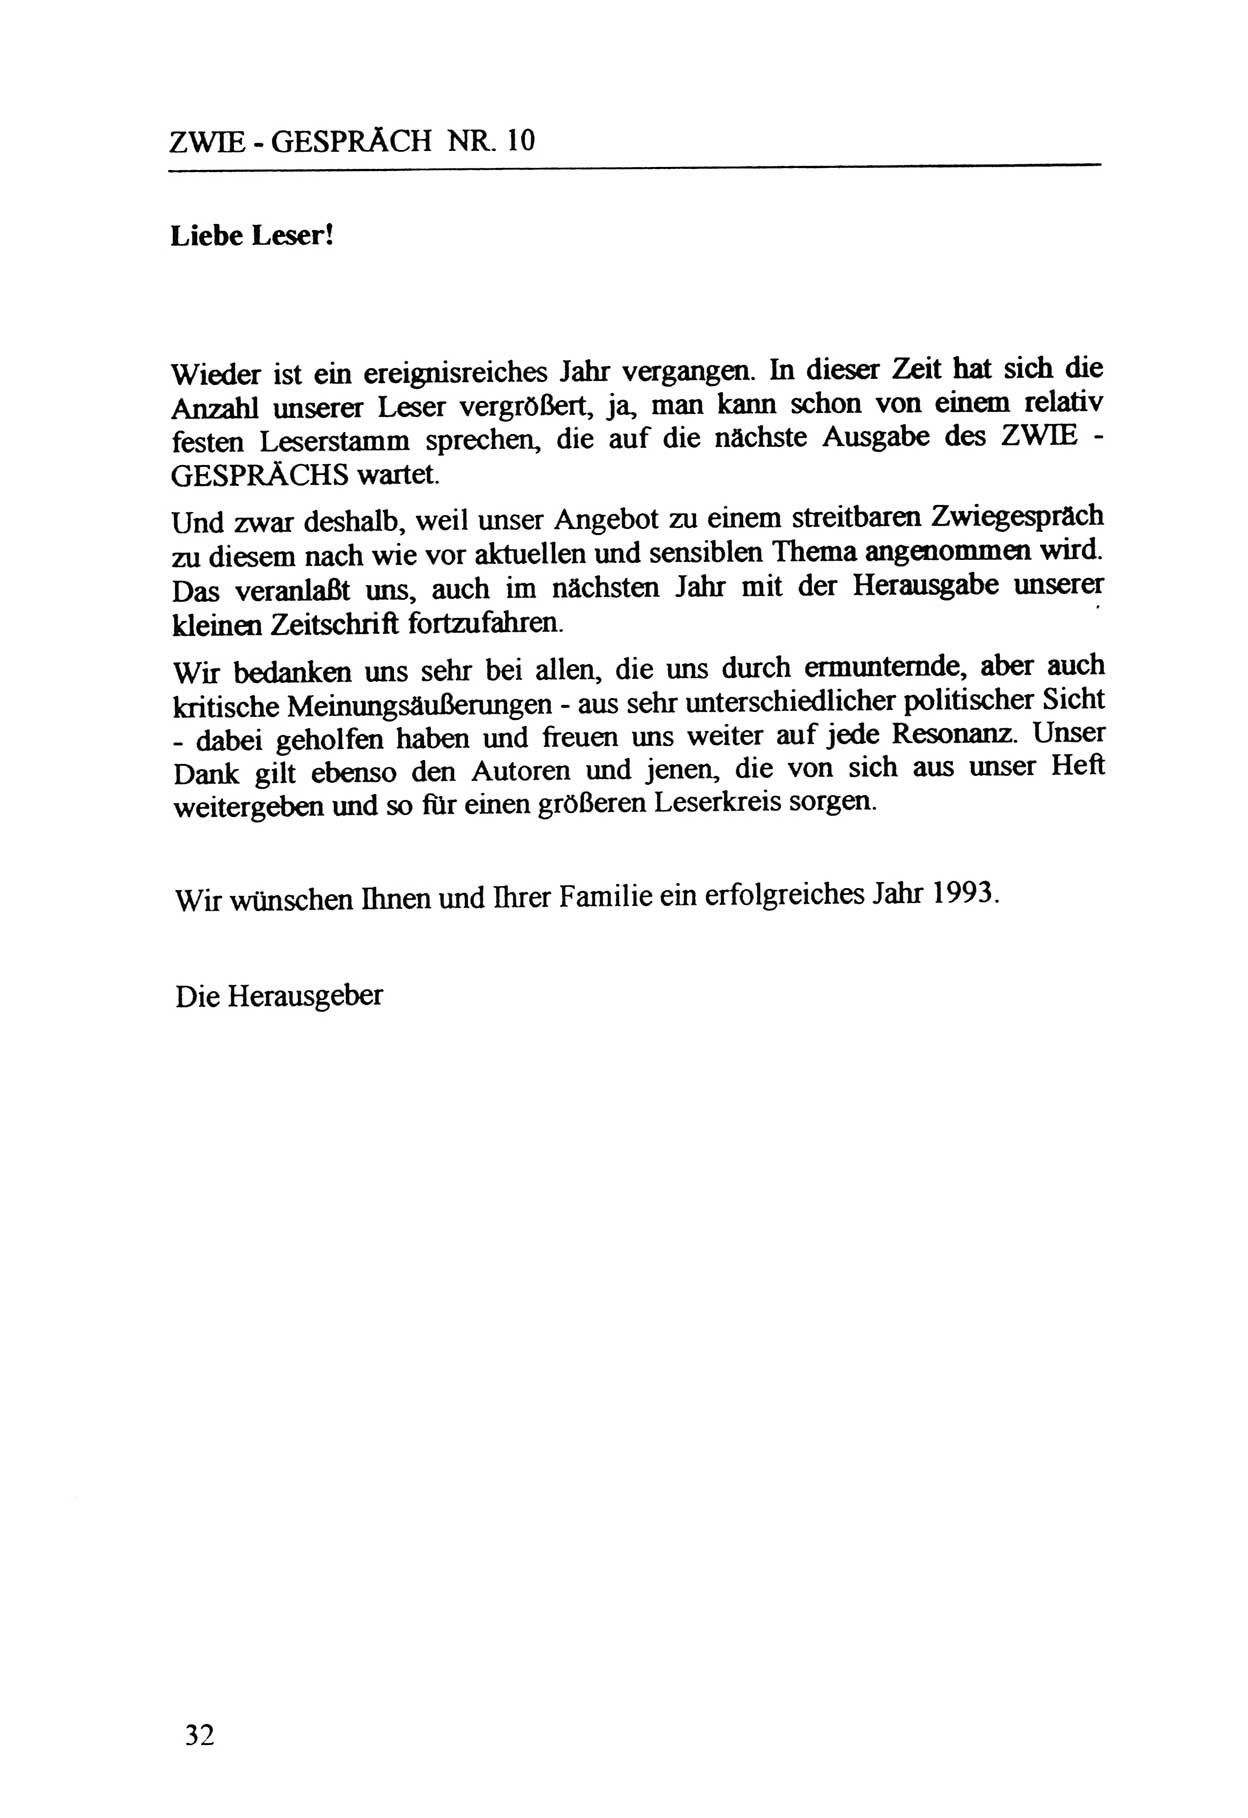 Zwie-Gespräch, Beiträge zur Aufarbeitung der Staatssicherheits-Vergangenheit [Deutsche Demokratische Republik (DDR)], Ausgabe Nr. 10, Berlin 1992, Seite 32 (Zwie-Gespr. Ausg. 10 1992, S. 32)